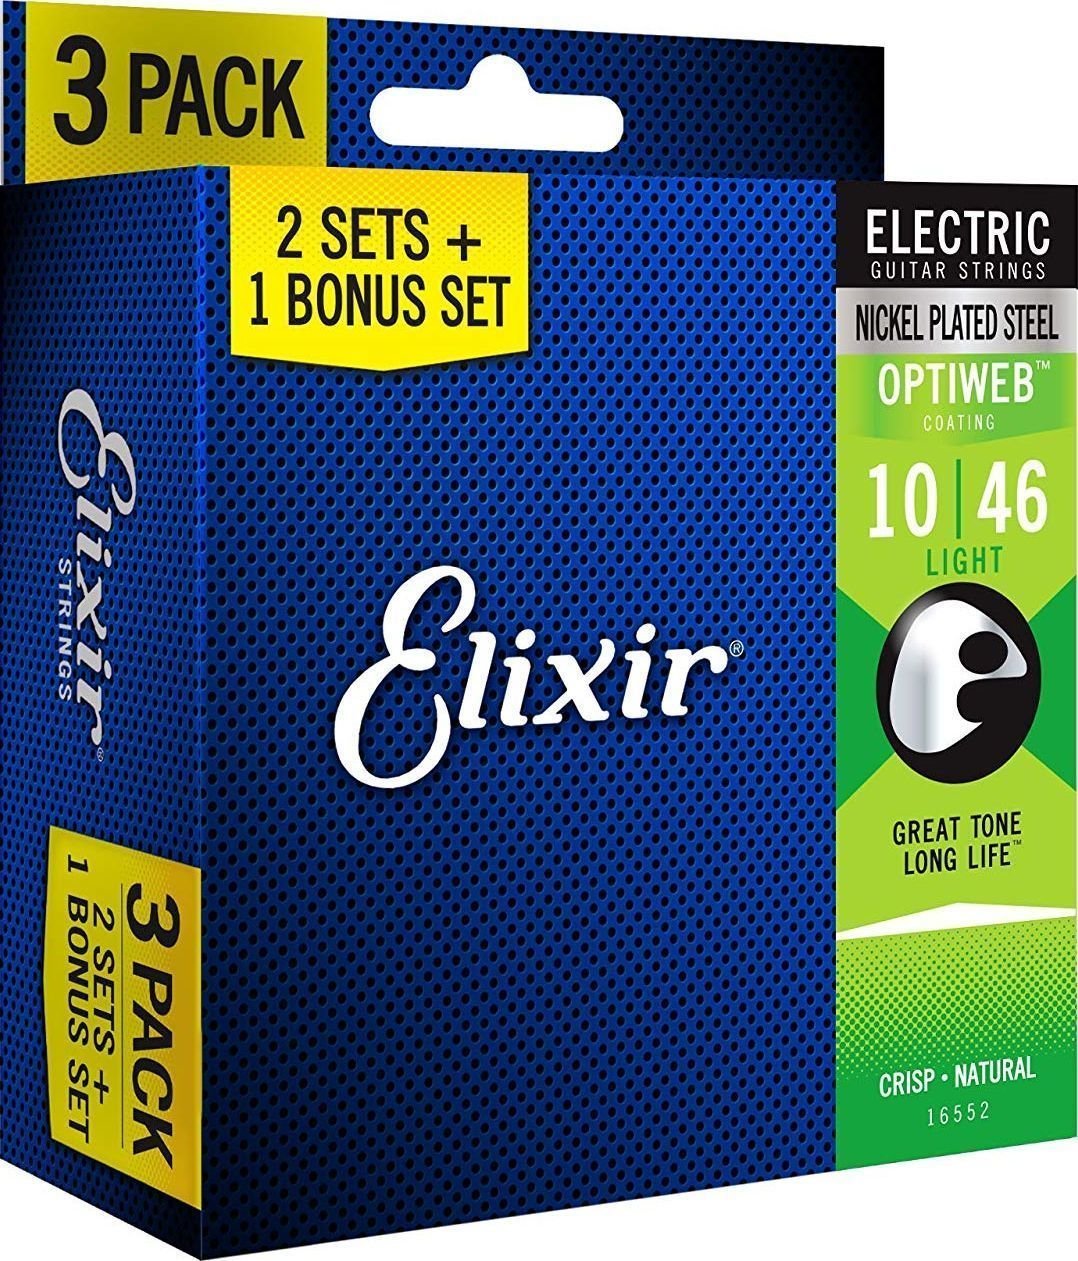 E-guitar strings Elixir 16552 OPTIWEB Coating Light 10-46 3-PACK